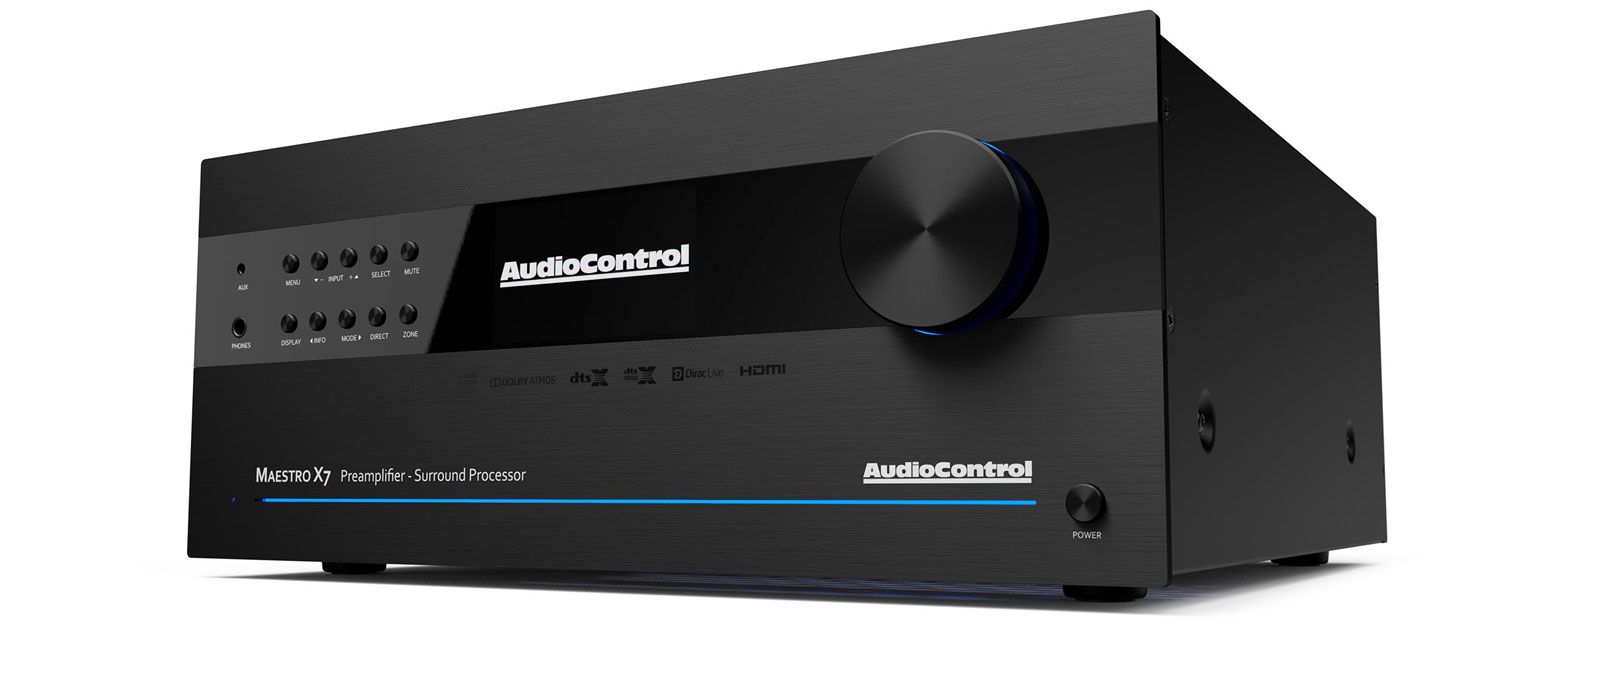 Audio control